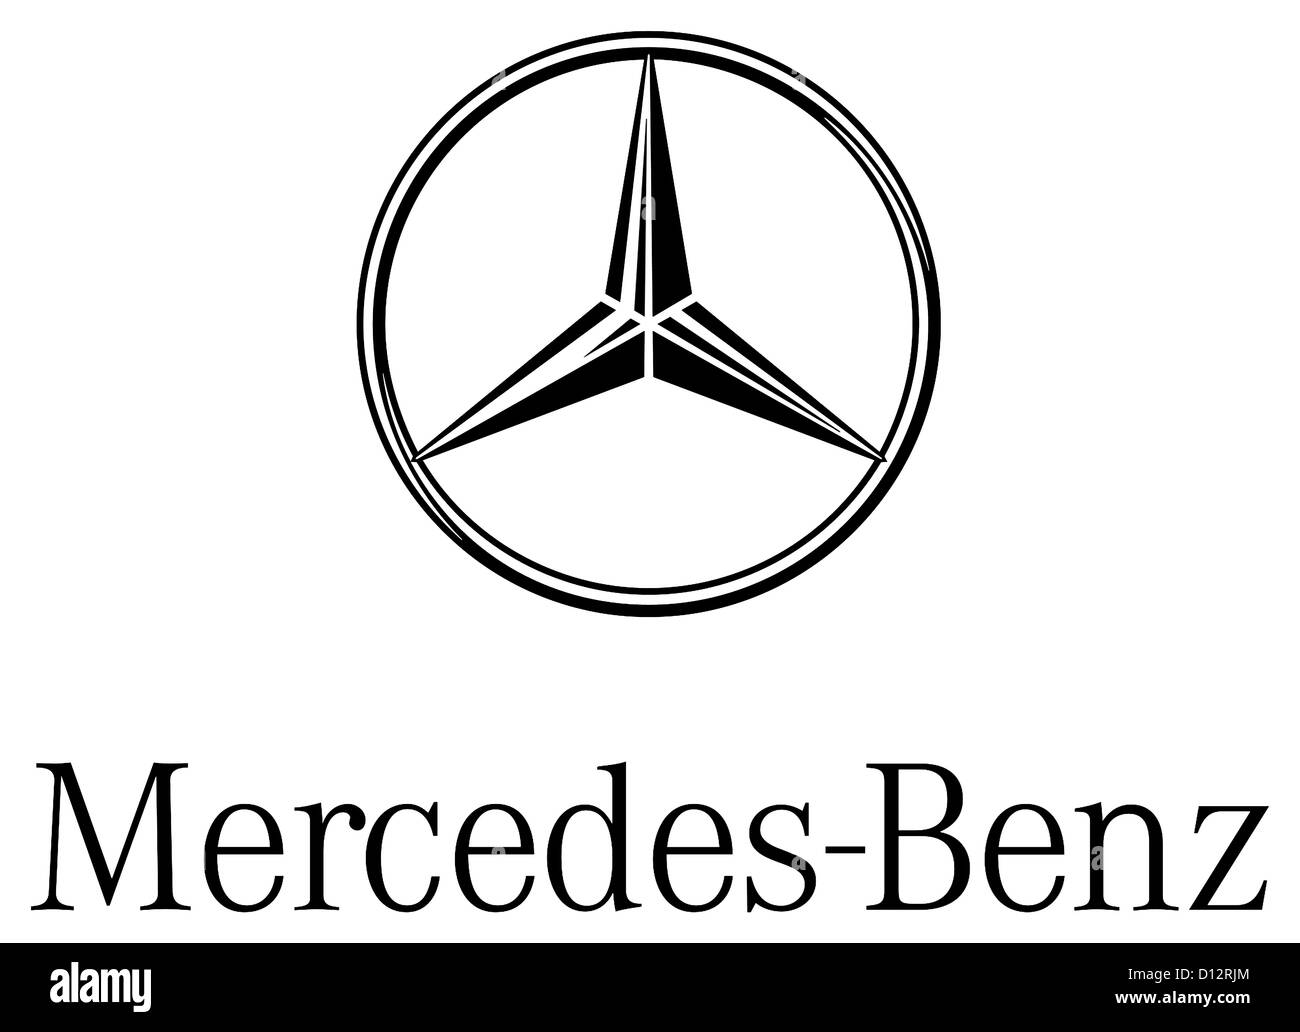 Logo de la marque de voiture Mercedes-Benz du groupe automobile allemand Daimler AG avec siège à Stuttgart. Banque D'Images